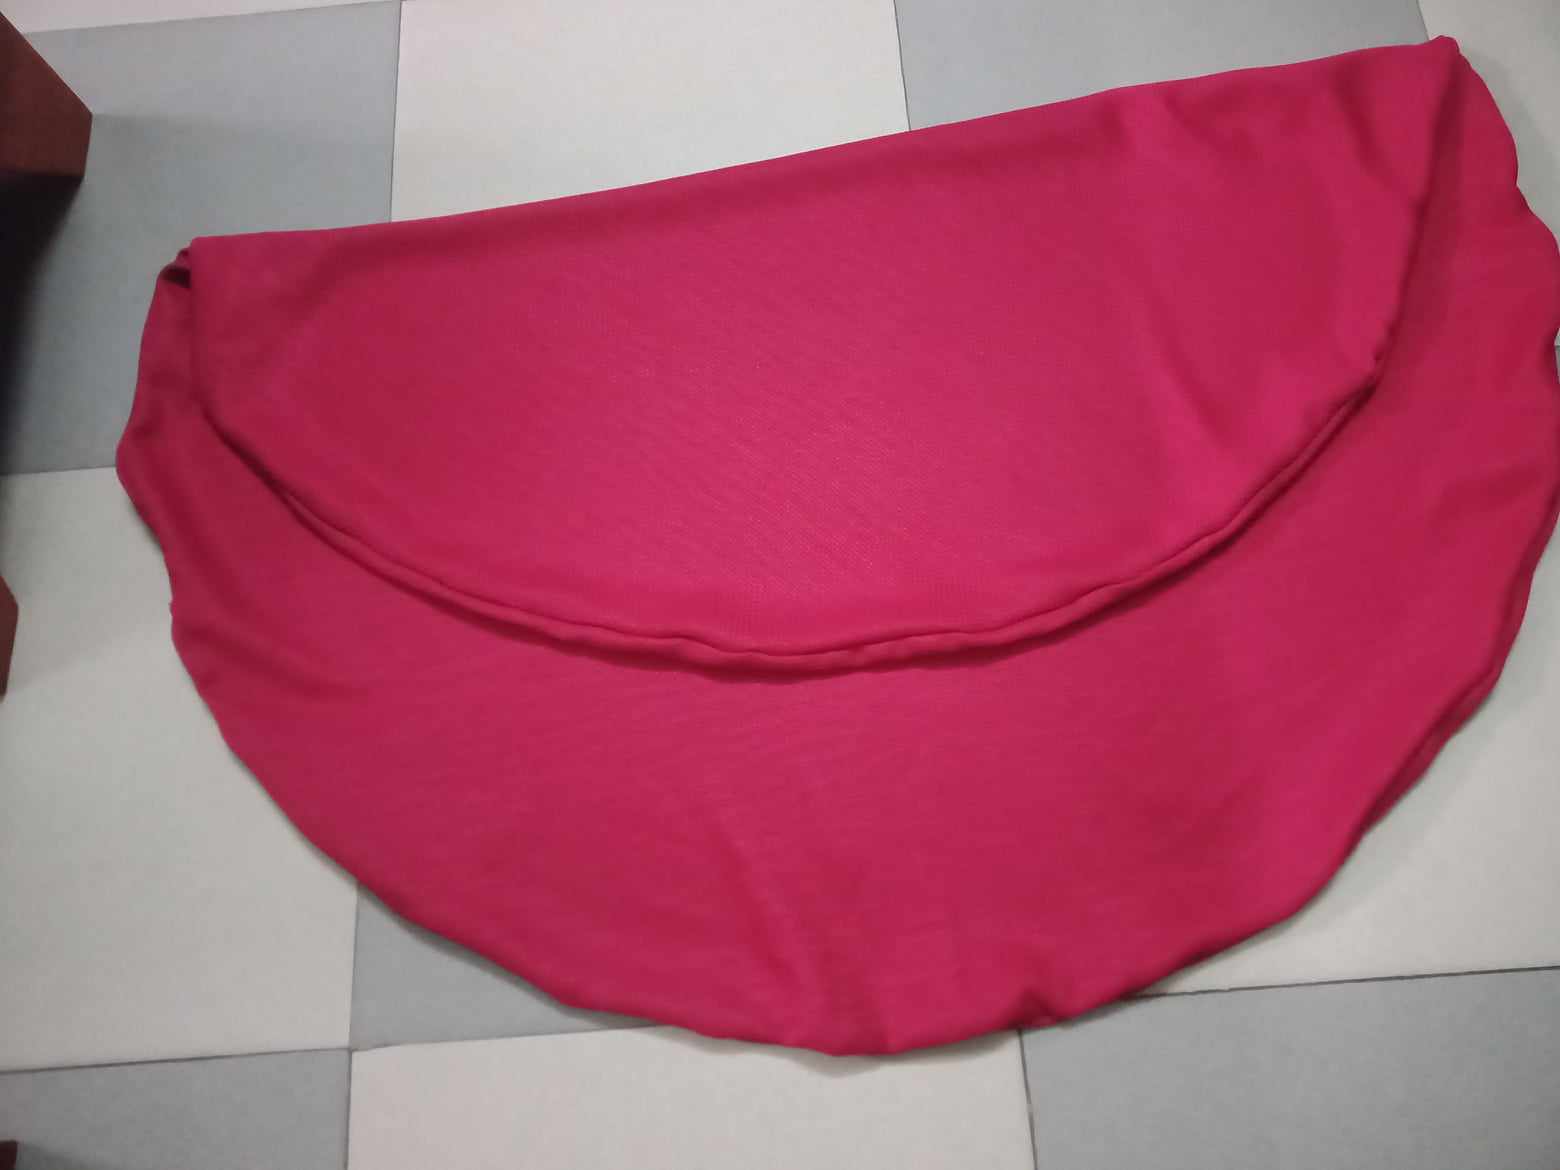 Customized-cushion-cover-velvet-red